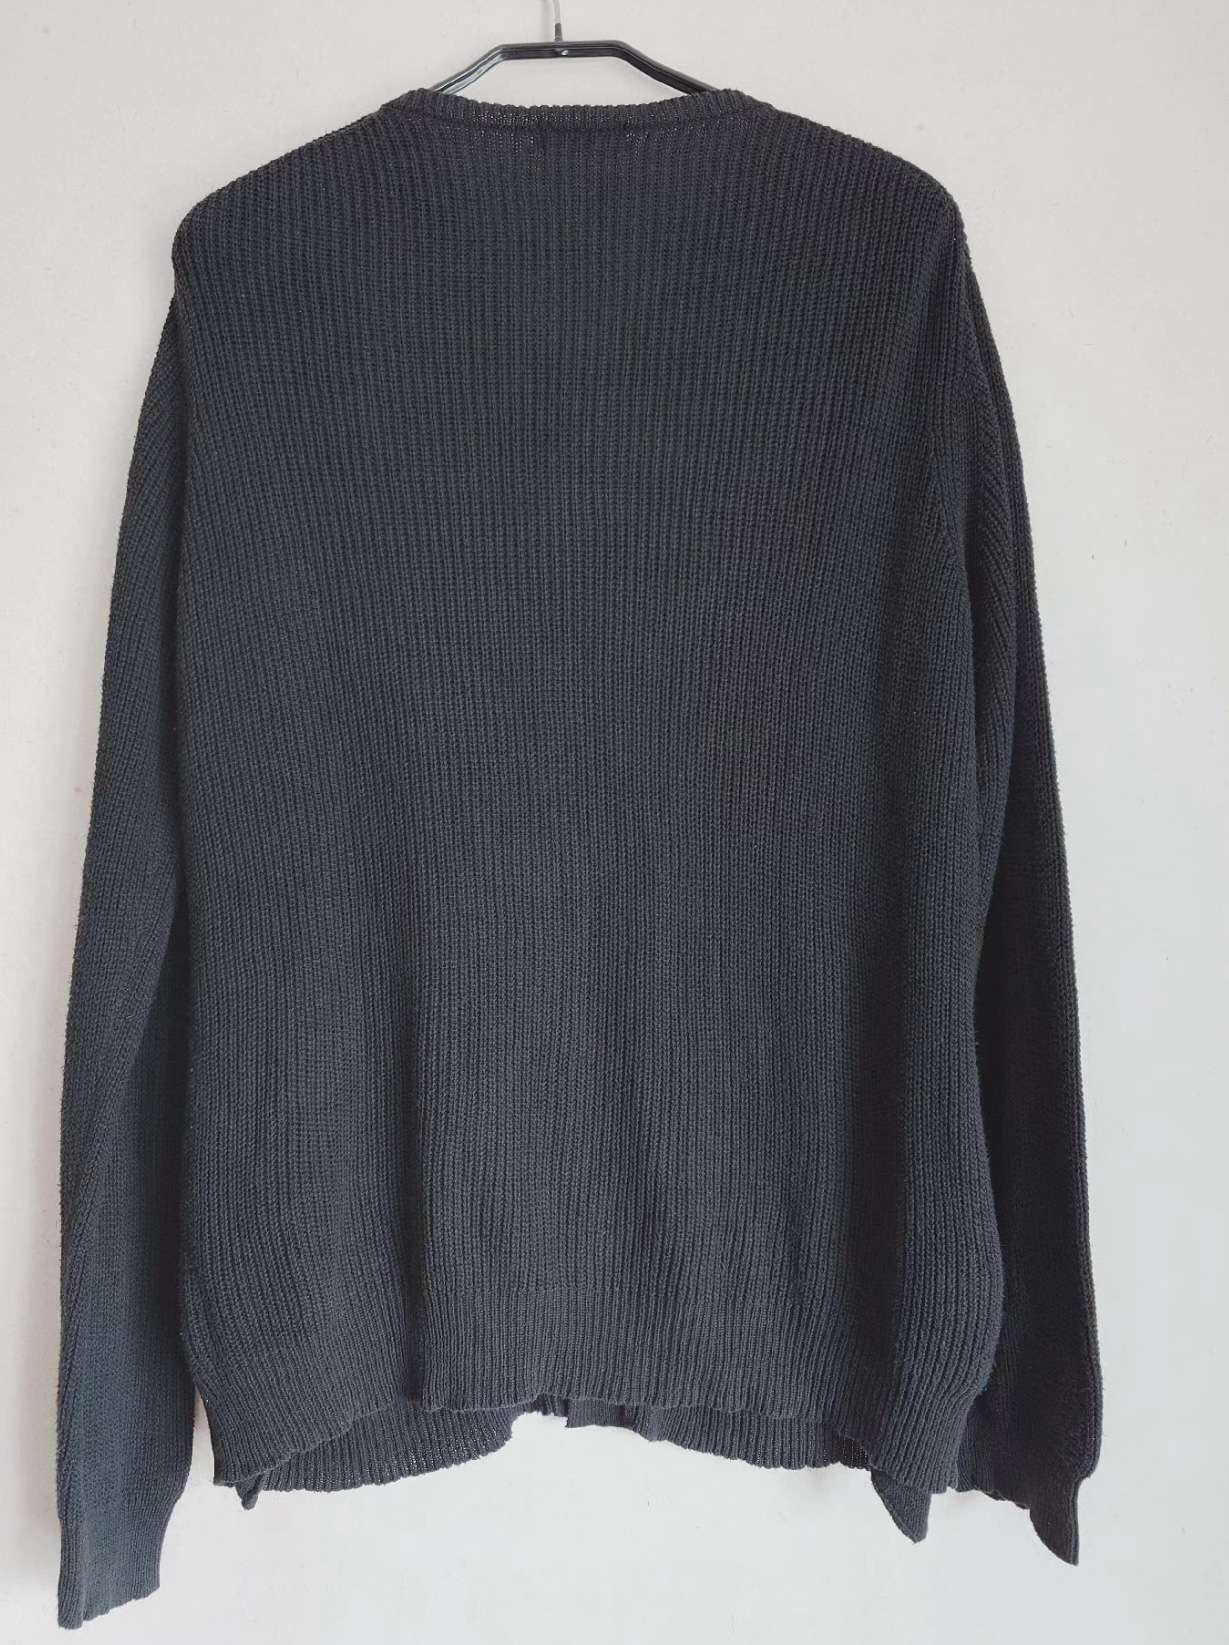 yohji yamamoto Yamamoto Yohji main line black cotton knitted sweater cardigan - 2